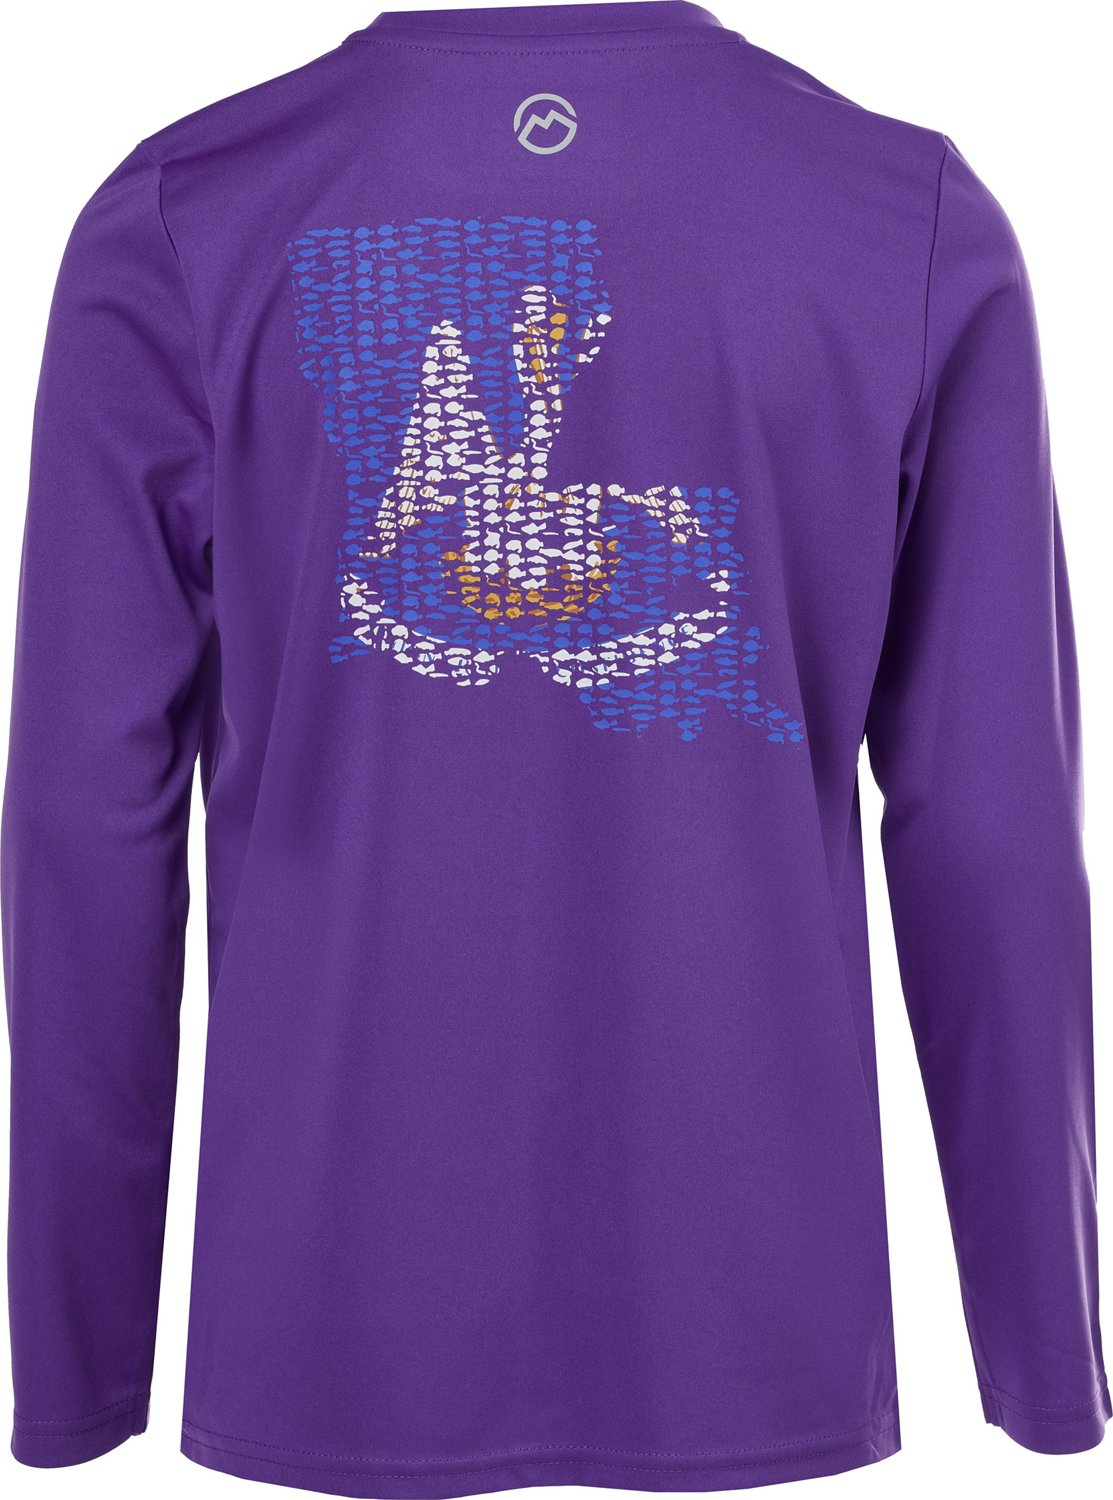 Magellan Outdoors, Shirts, Purple Magellan Fishing Shirt